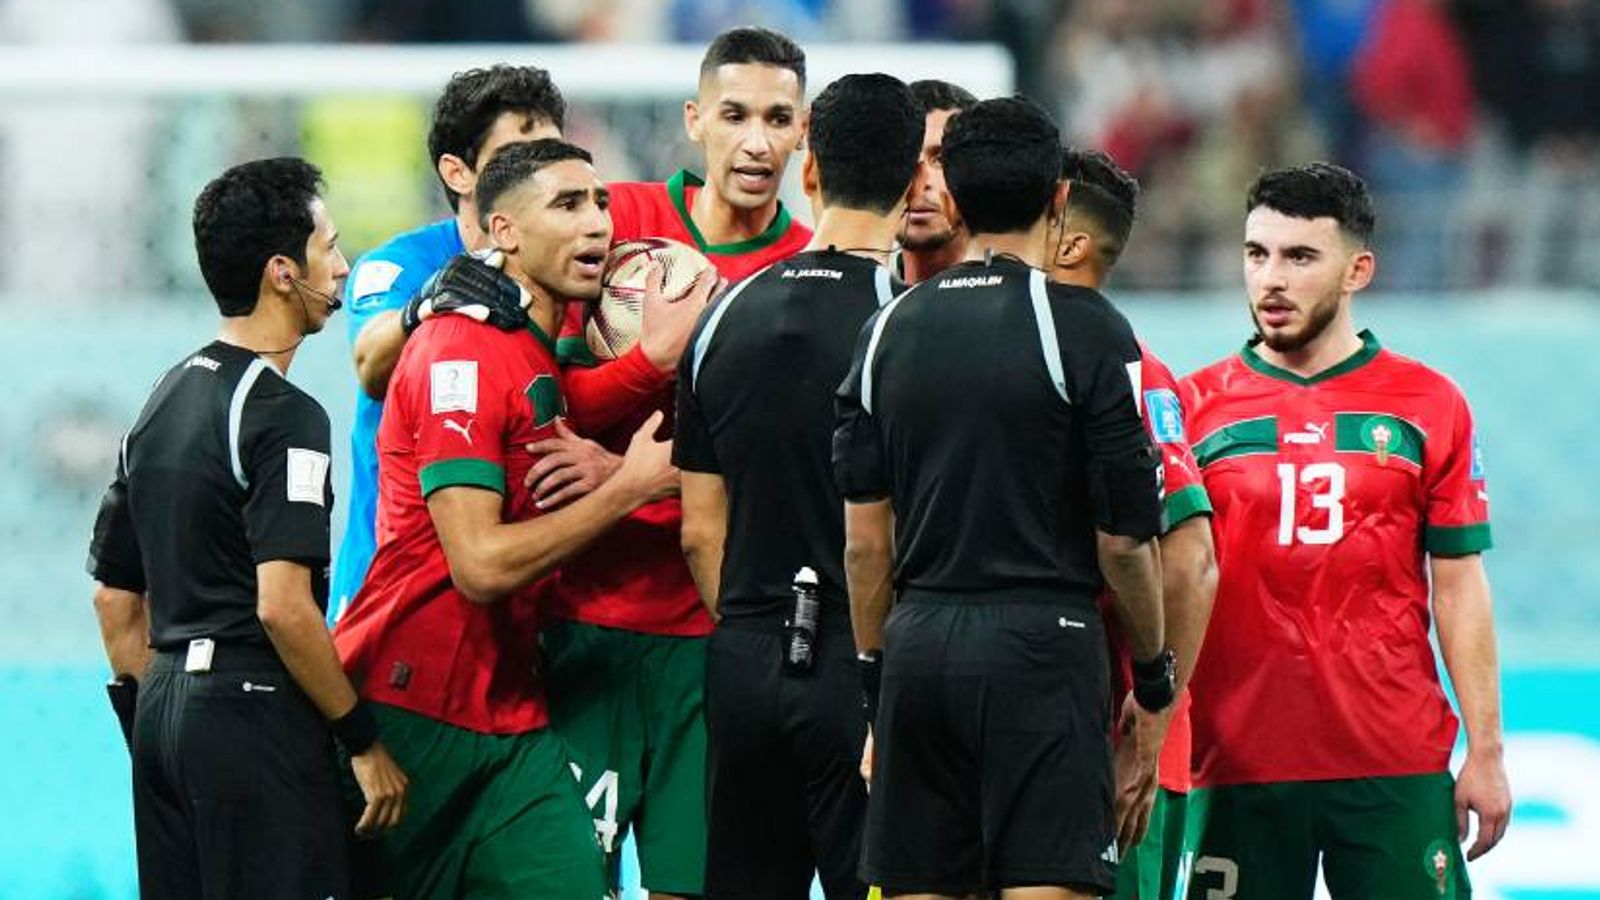 WM 2022 Marokkaner bedrängen Schiedsrichter nach Niederlage gegen Kroatien Fußball News Sky Sport